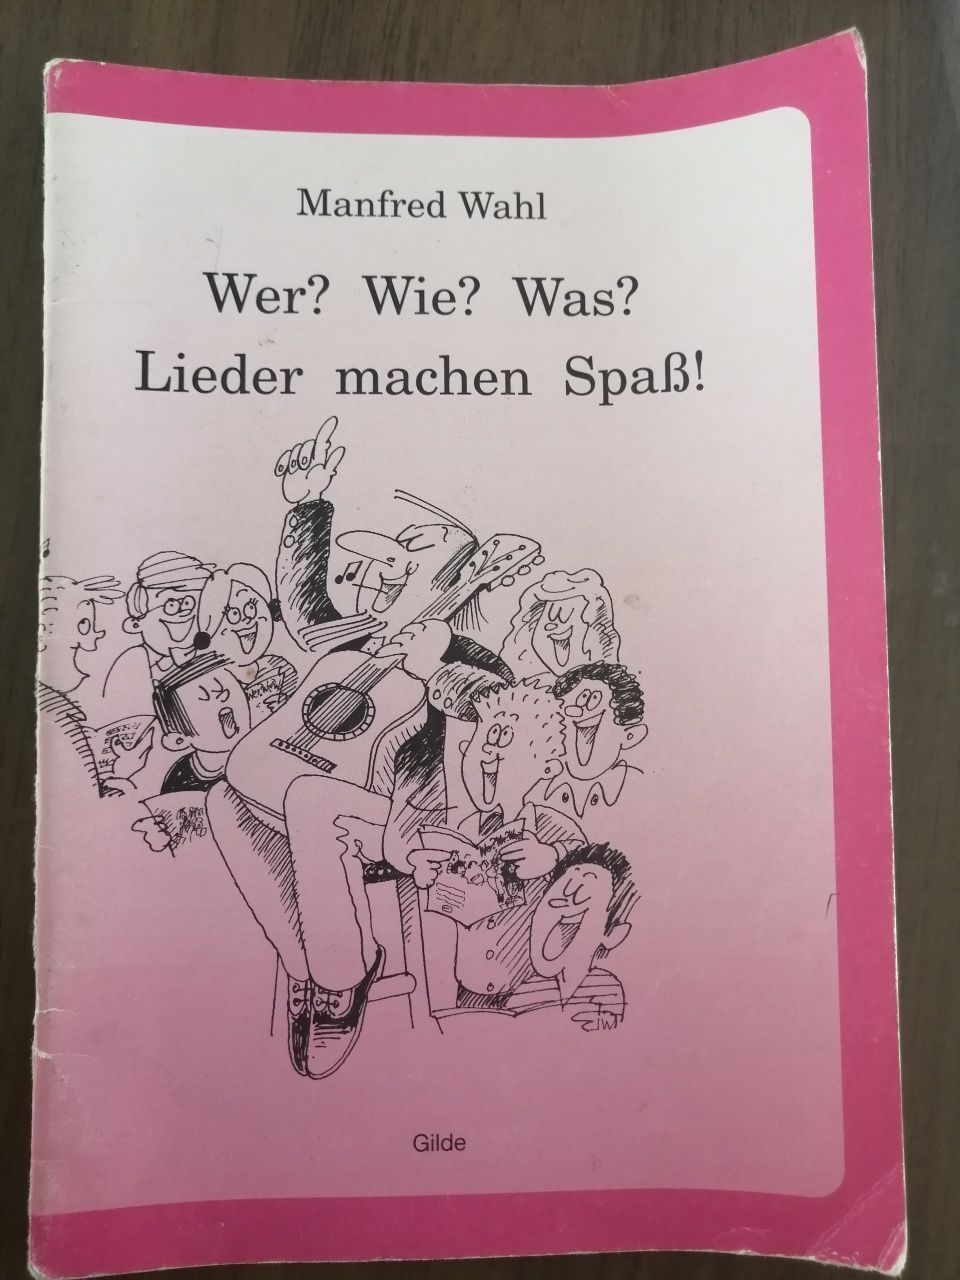 Книга с немецкими песнями для детей,, Wer?Wie?Was?'' Manfred Wahl